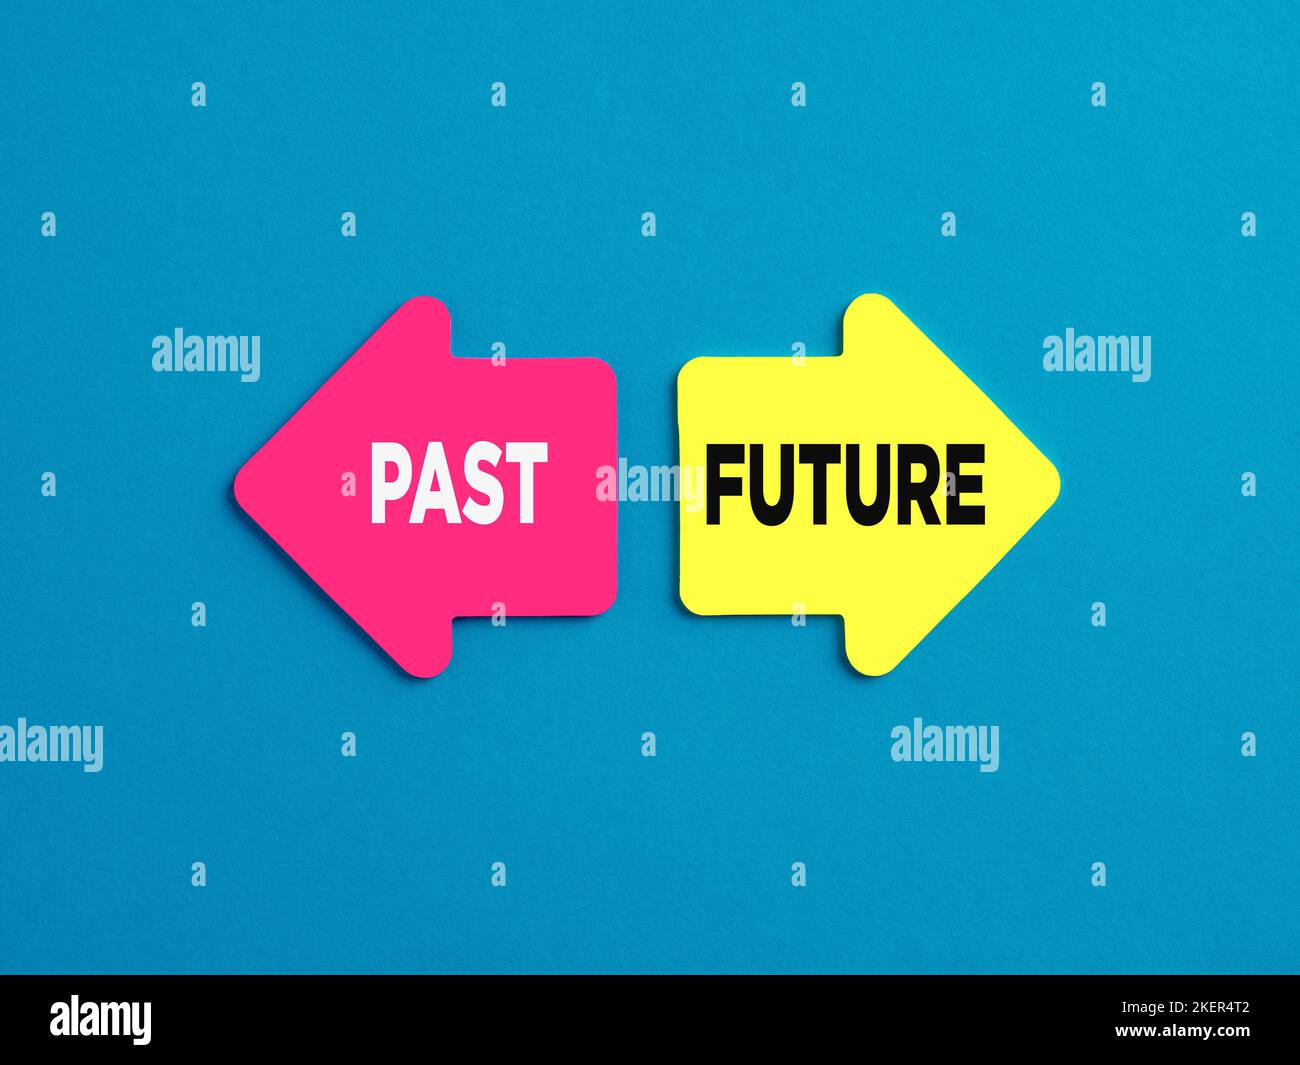 Il dilemma tra vivere nel passato o andare avanti nel futuro. Le parole futuro e passato su frecce che puntano in direzioni opposte su ba blu Foto Stock